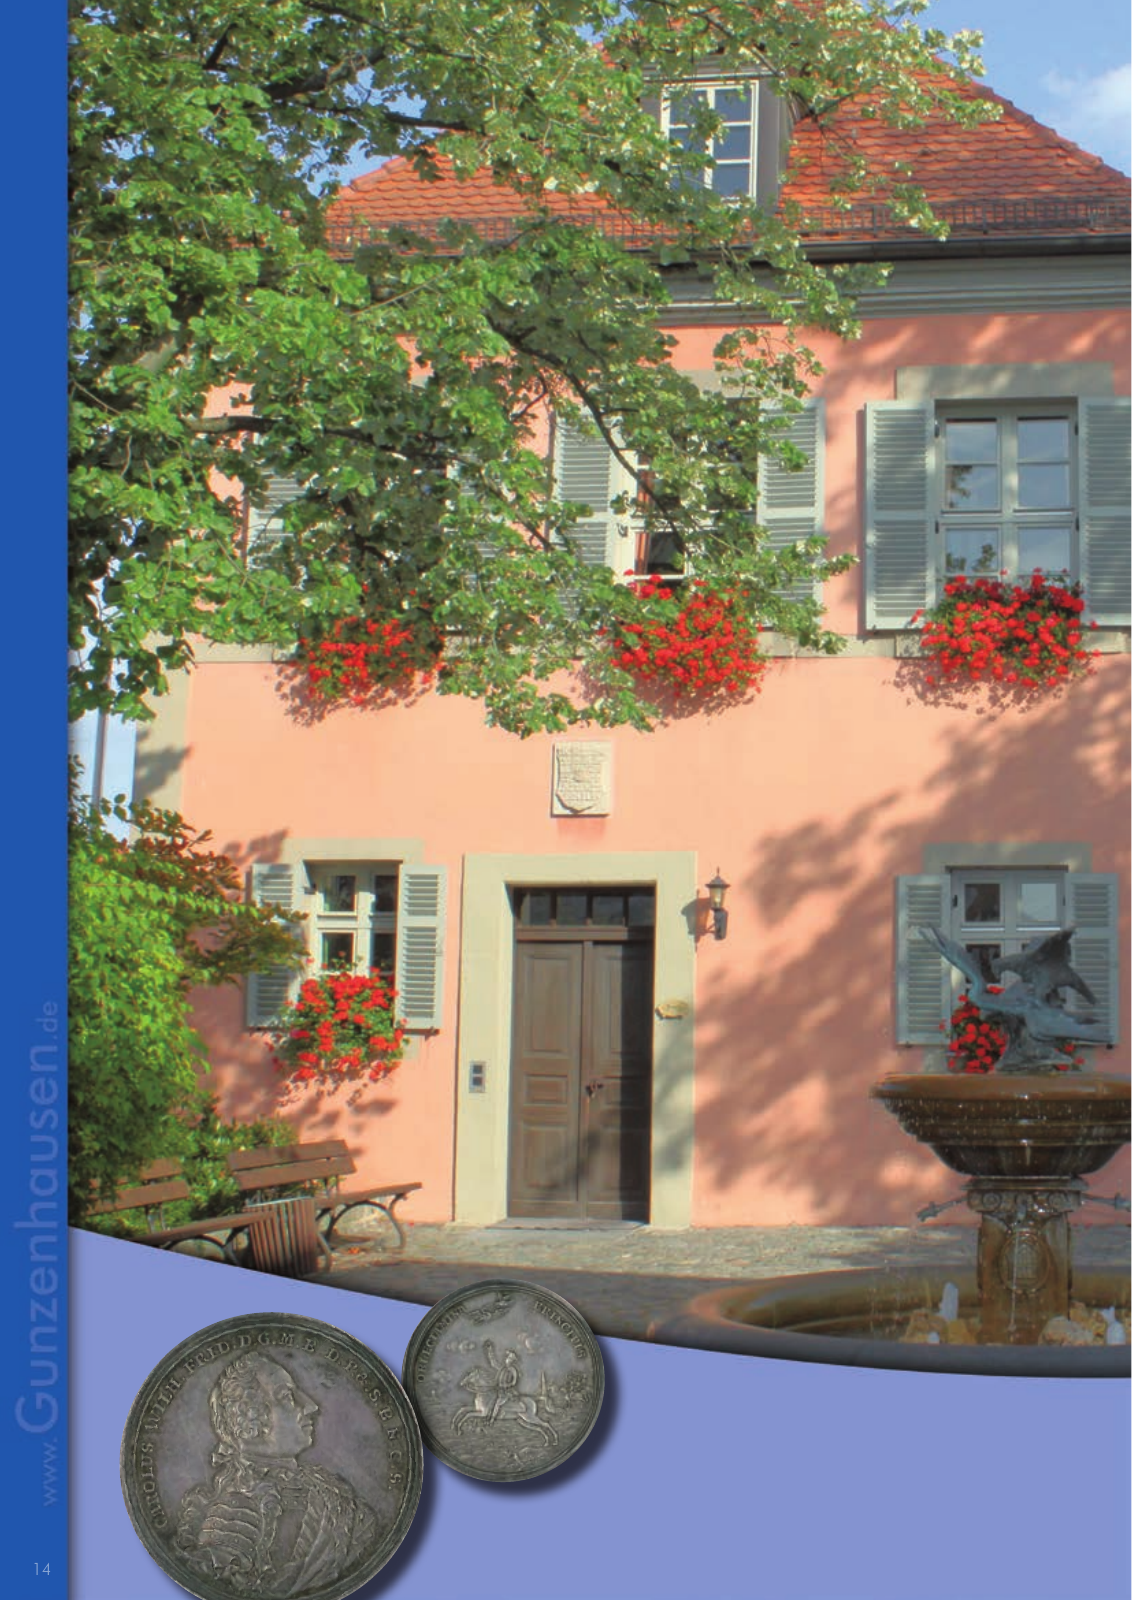 Vorschau leben & arbeiten in Gunzenhausen - 2015 Seite 14